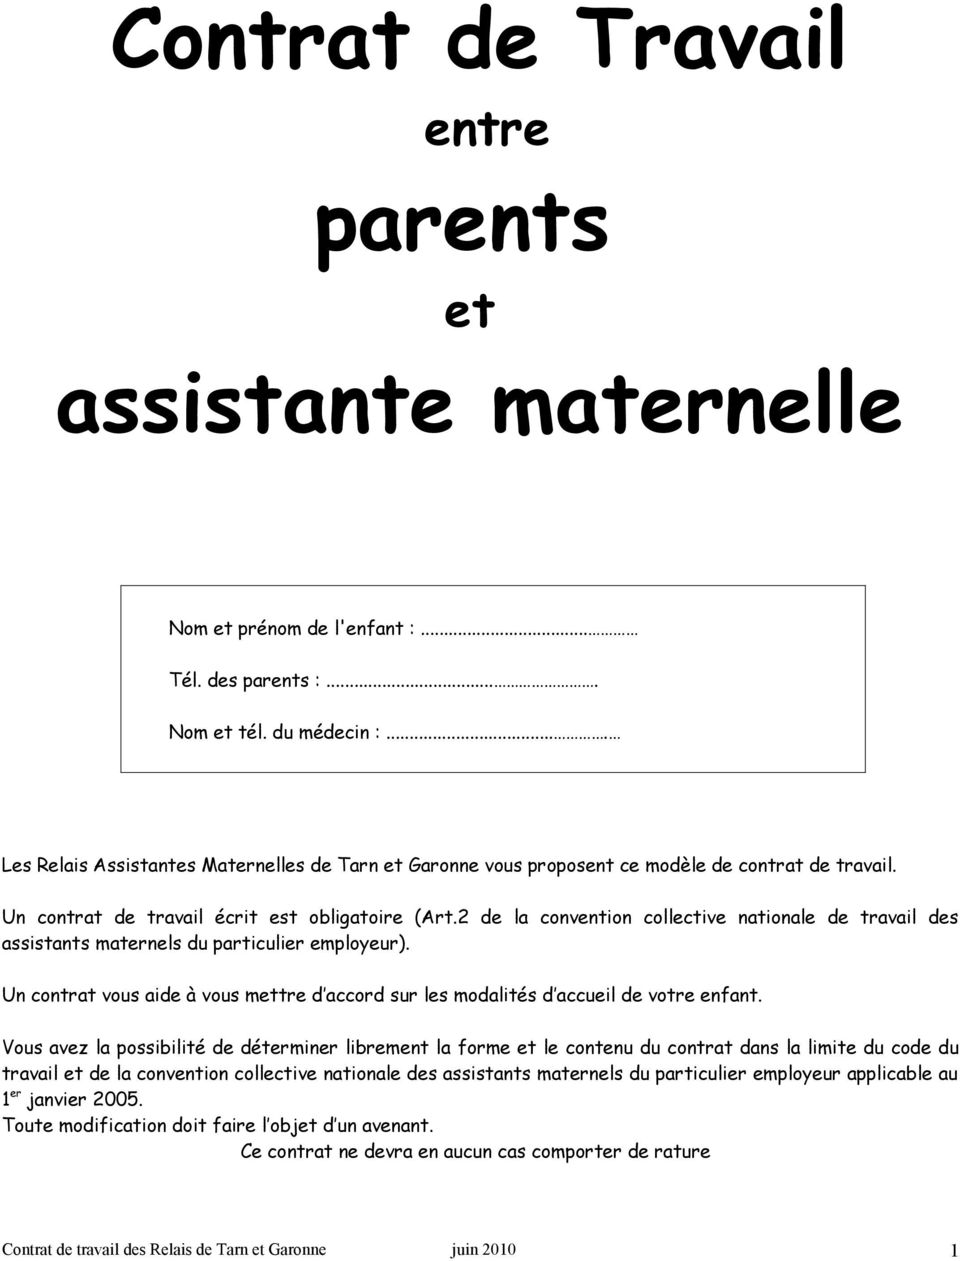 MODELE DE CONTRAT DE TRAVAIL PARENTS - ASSISTANTE MATERNELLE